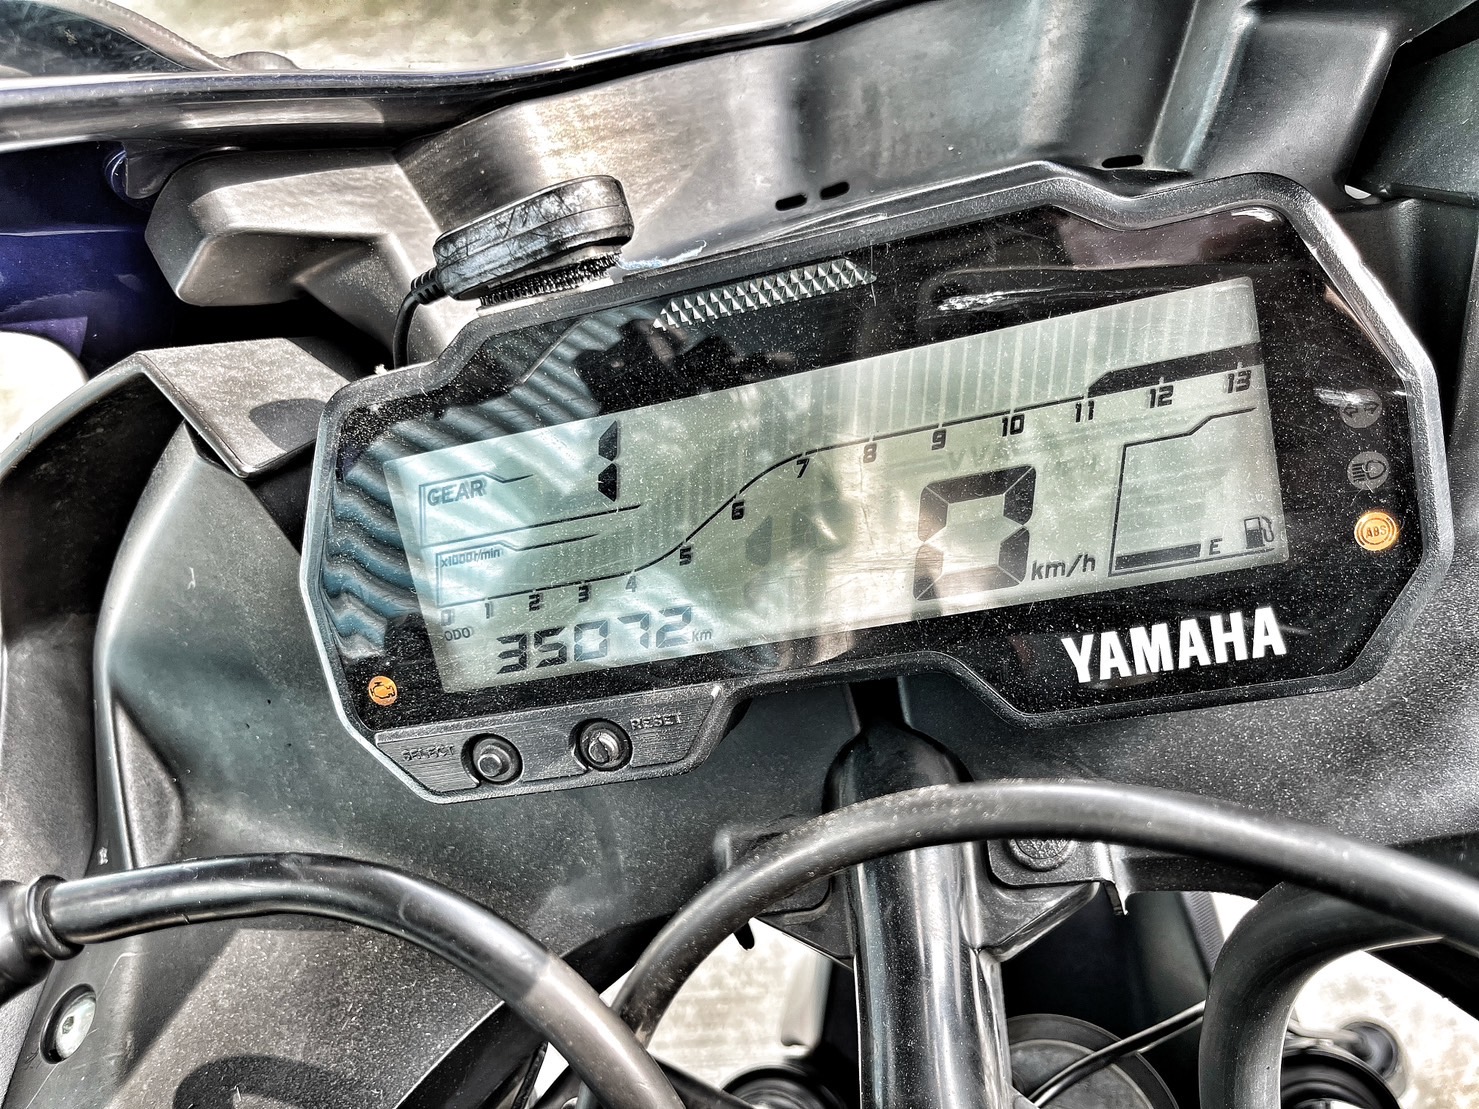 YAMAHA YZF-R15 - 中古/二手車出售中 行車記錄器 手機架 拉桿 基本改 小資族二手重機買賣 | 小資族二手重機買賣